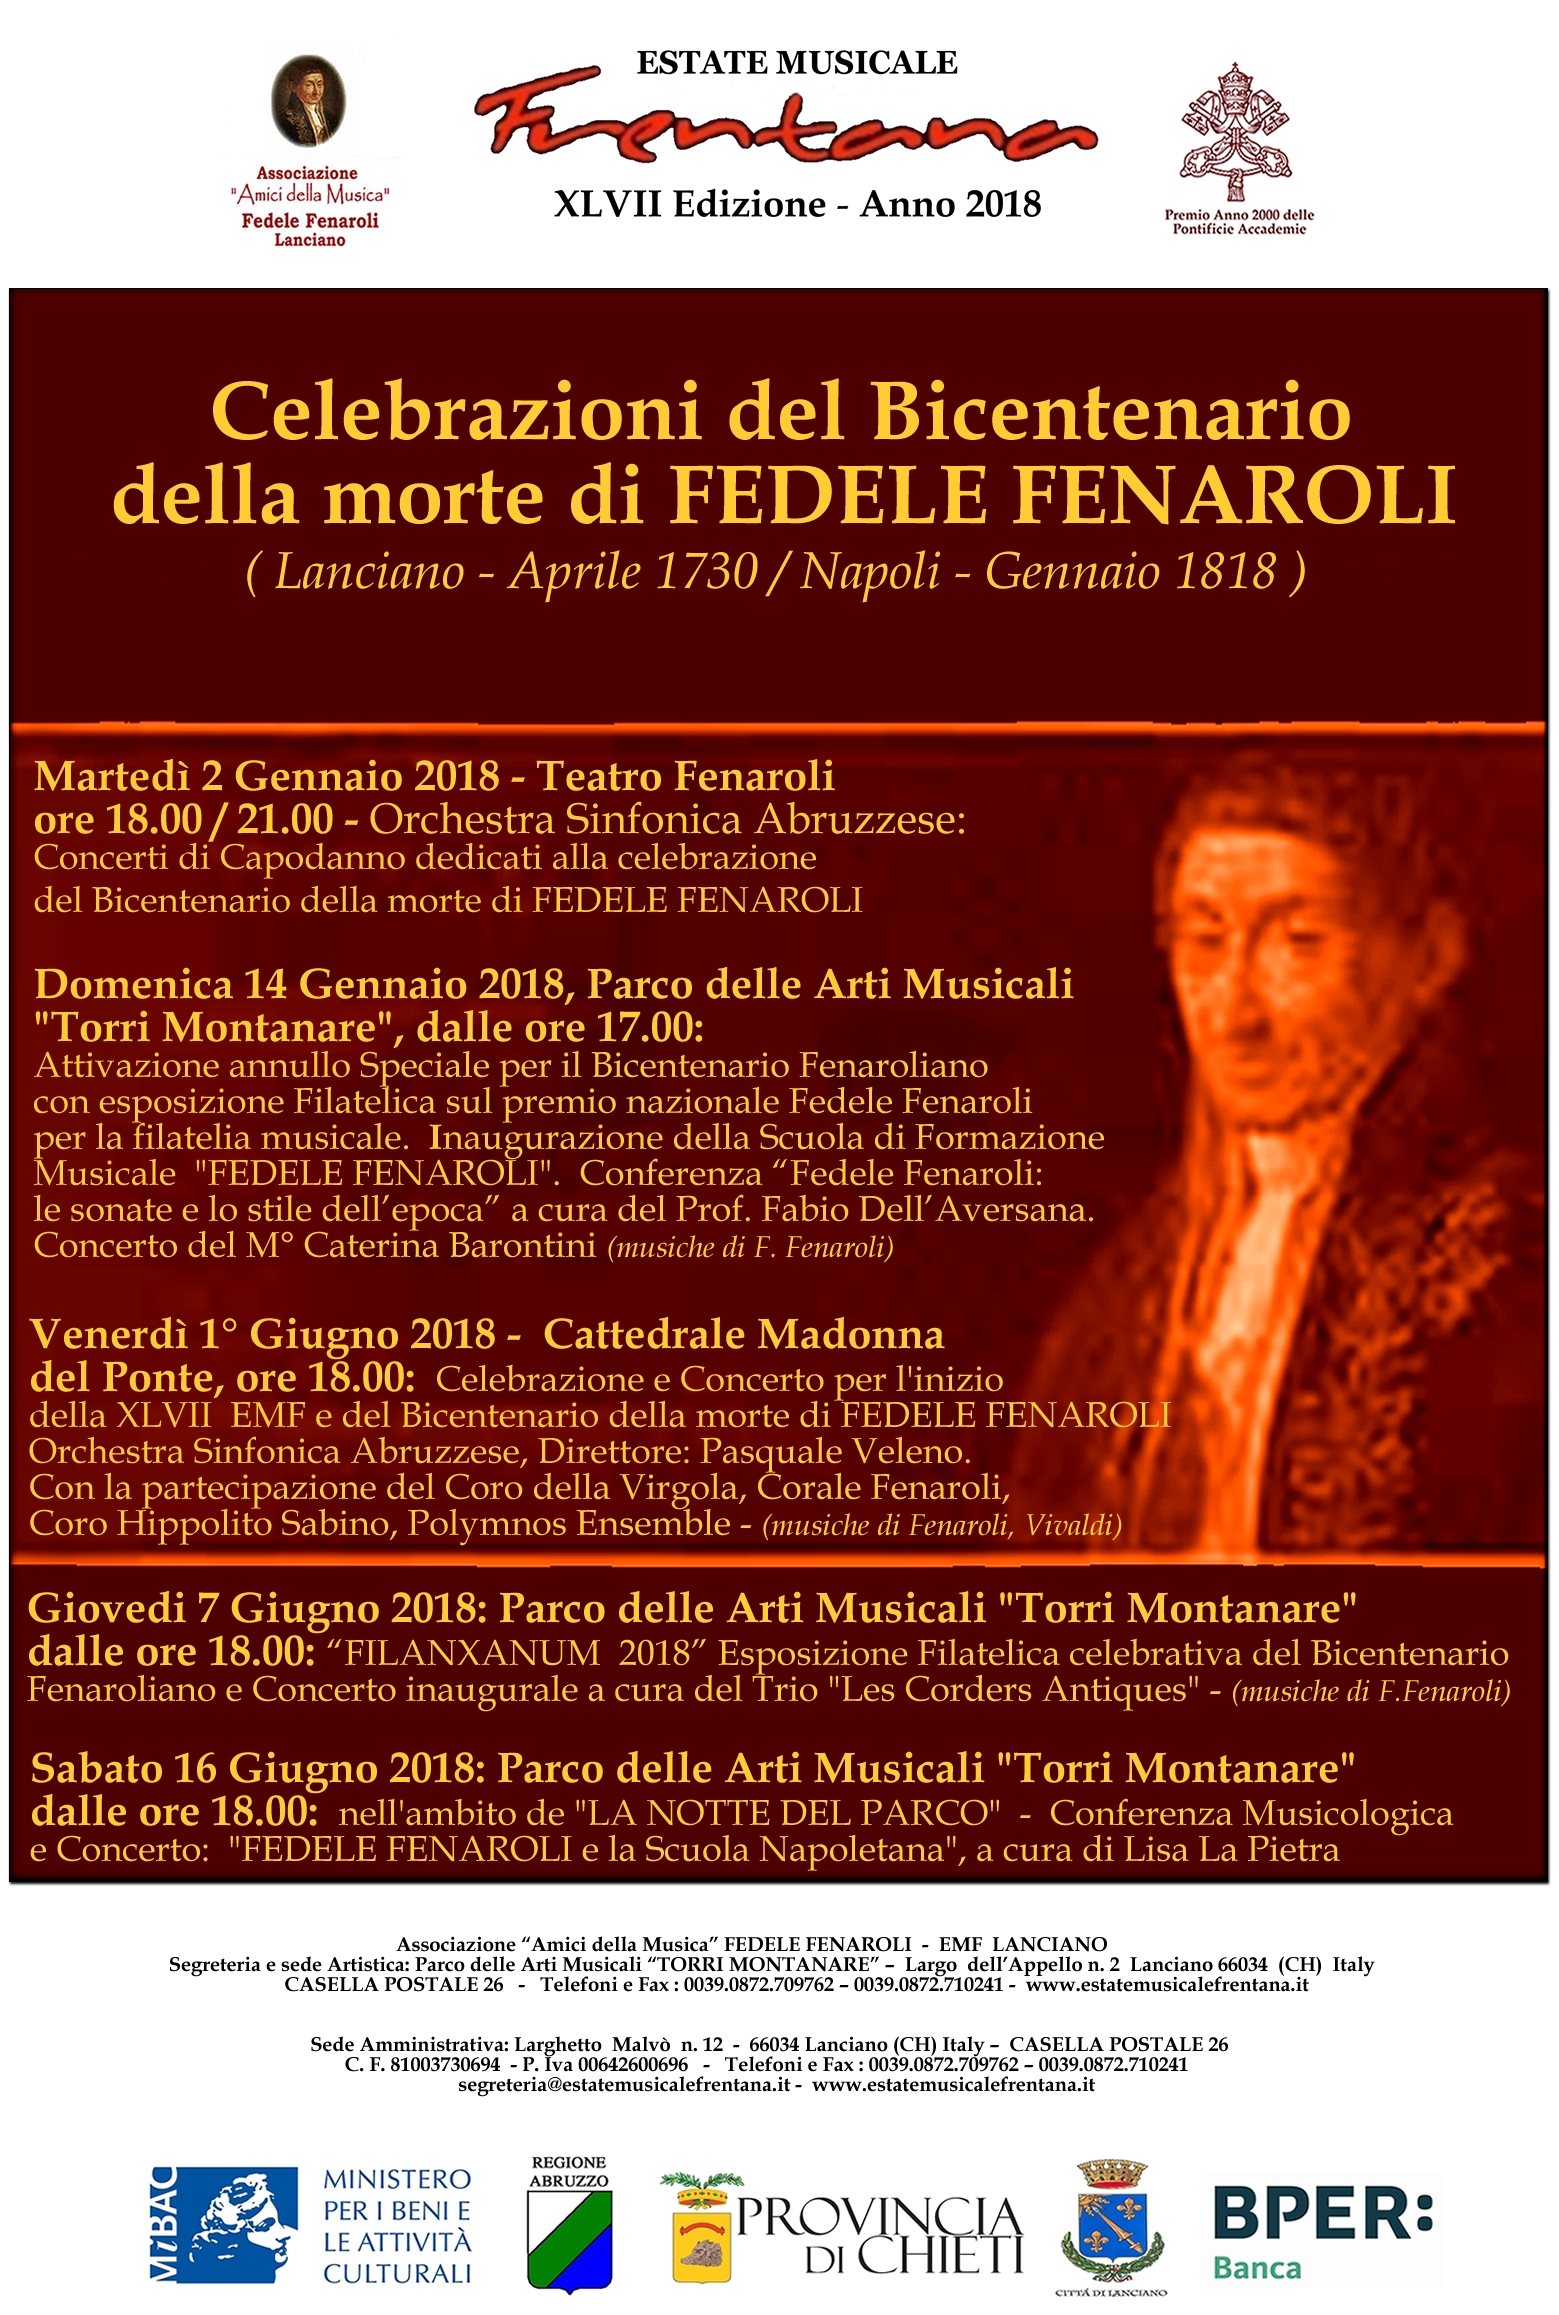 Celebrazioni del Bicentenario della morte di FEDELE FENAROLI